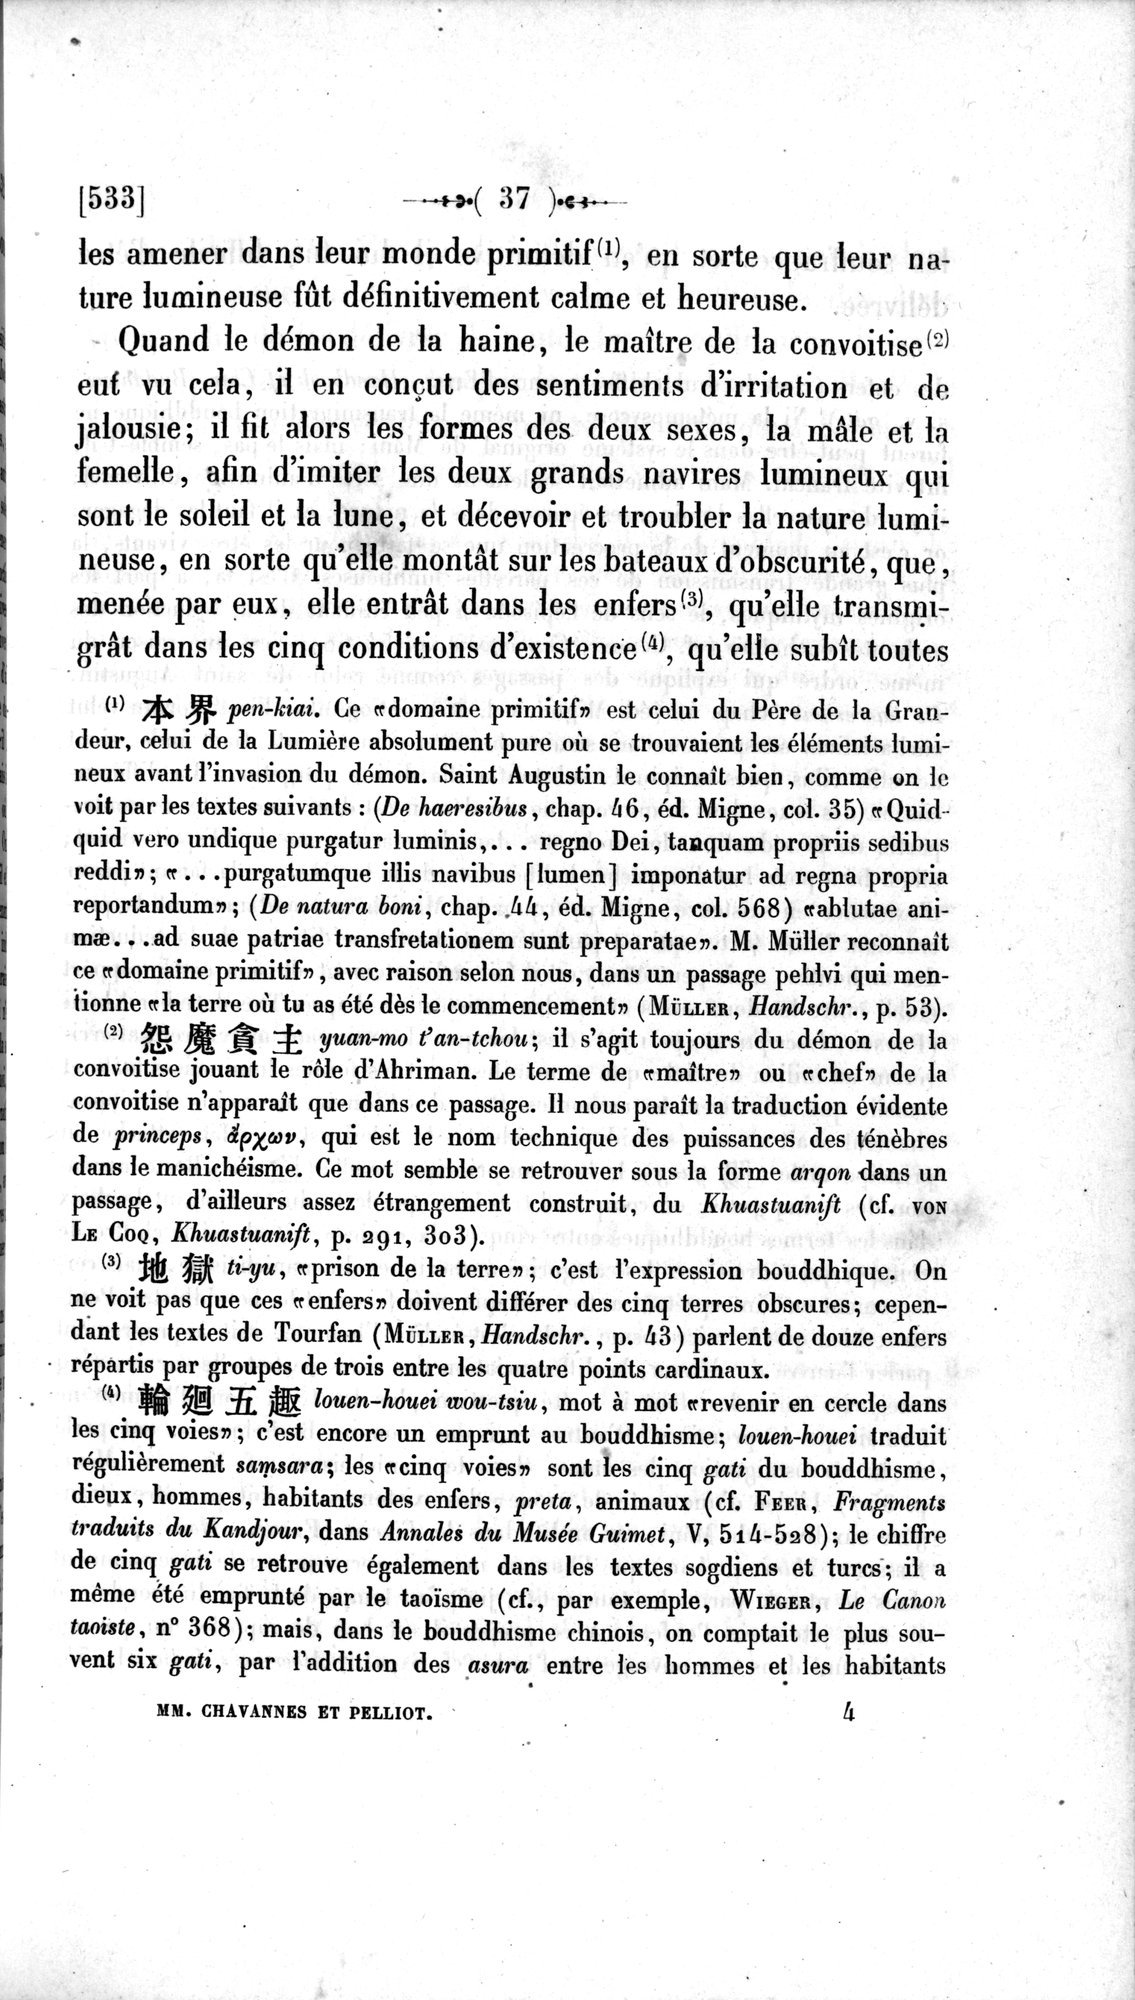 Un traité manichéen retrouvé en Chine : vol.1 / Page 47 (Grayscale High Resolution Image)